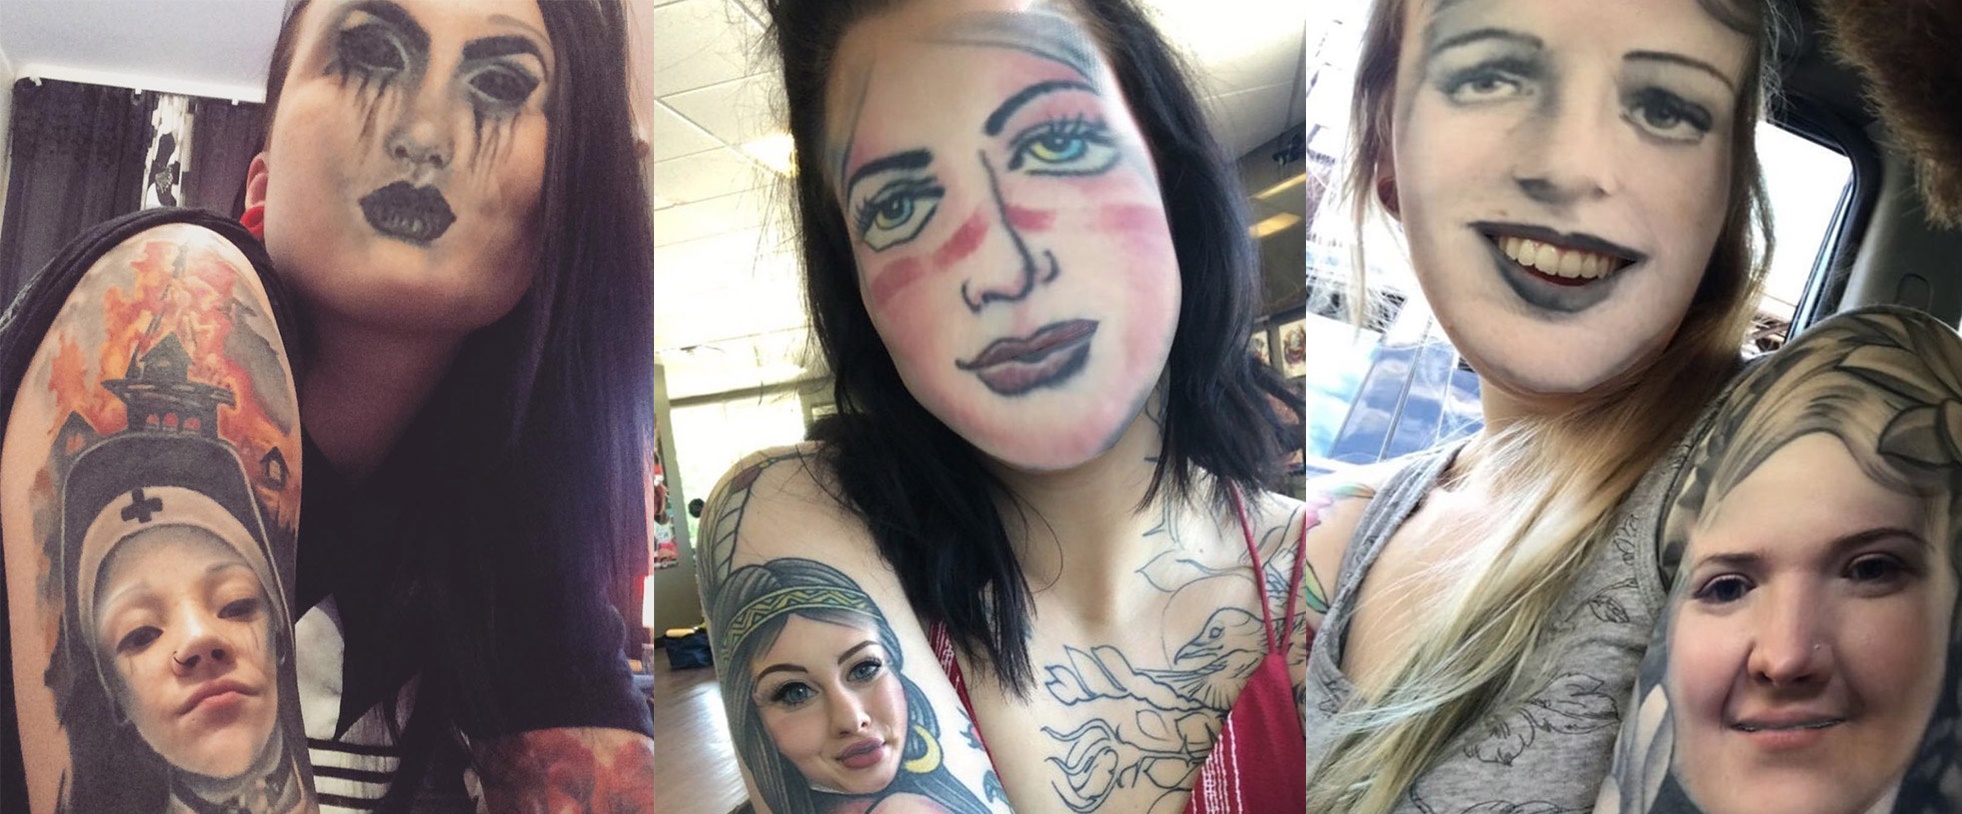 【じわじわくる】自身のタトゥーと顔交換アプリを試した人々の画像まとめ